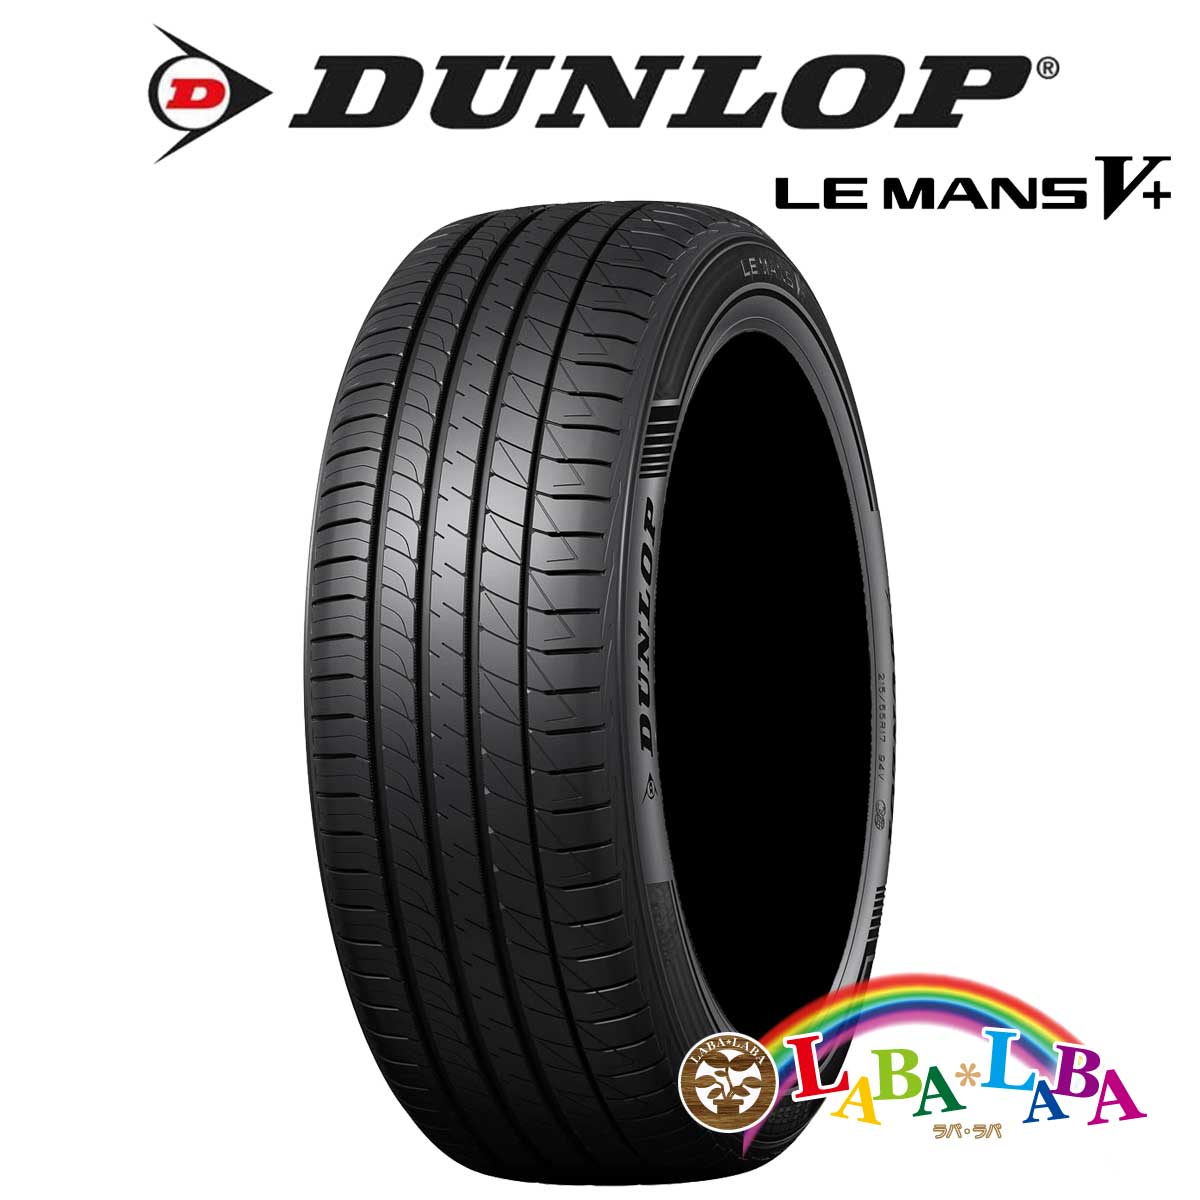 DUNLOP LE MANS V+ LM5+ 245/35R20 95W XL サマータイヤ 2本セット